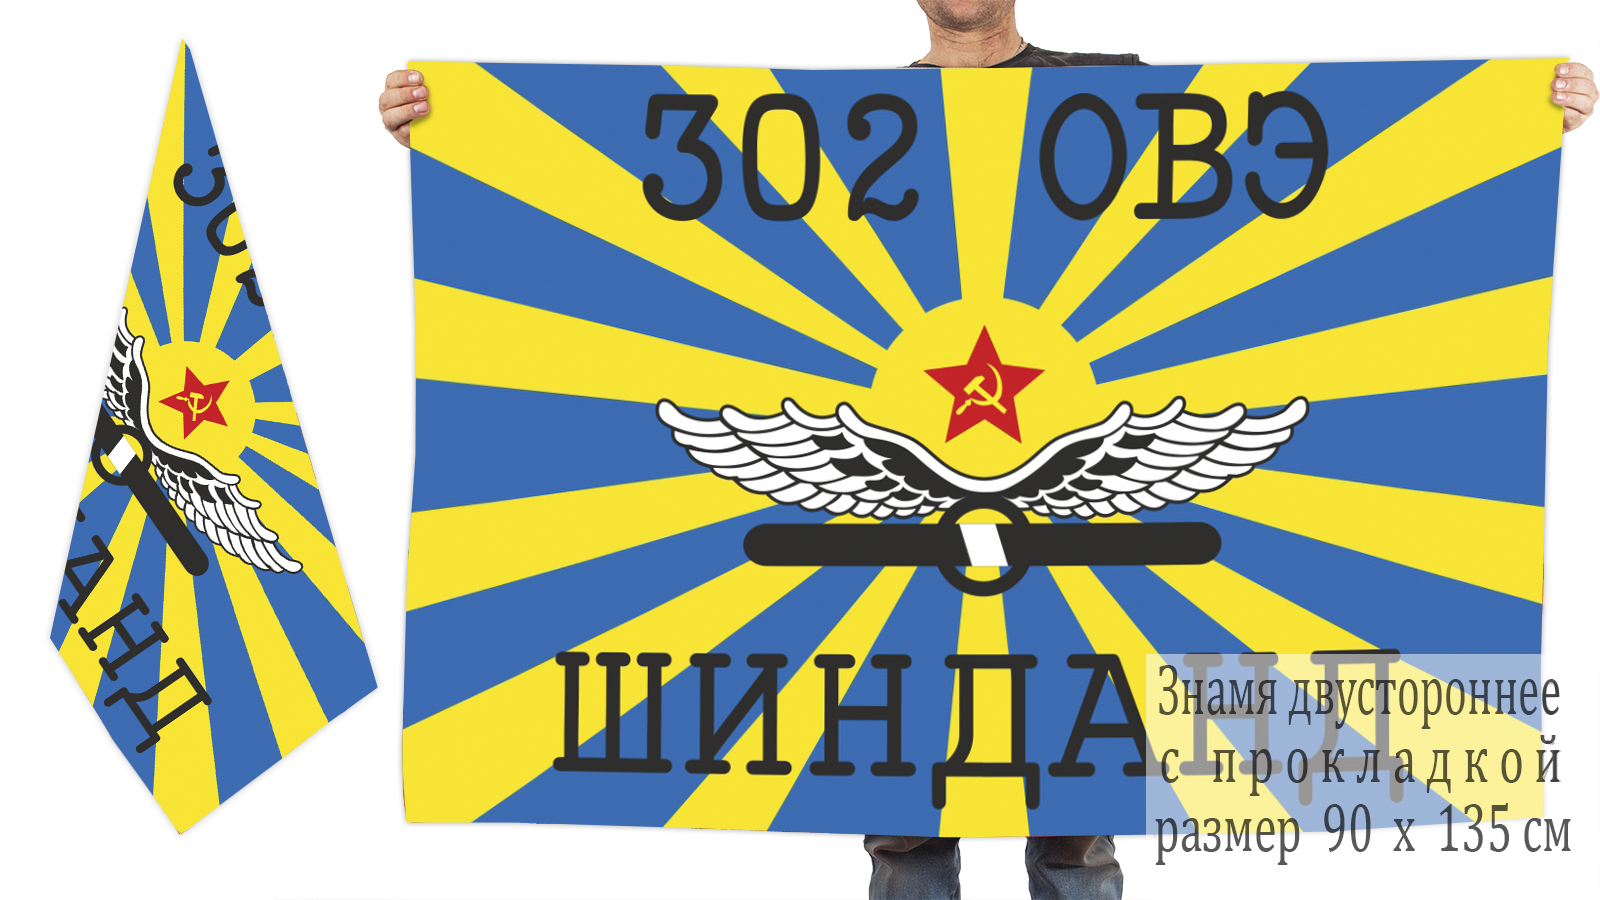 Купить в интернет магазине флаг ВВС «302 ОВЭ Шинданд»